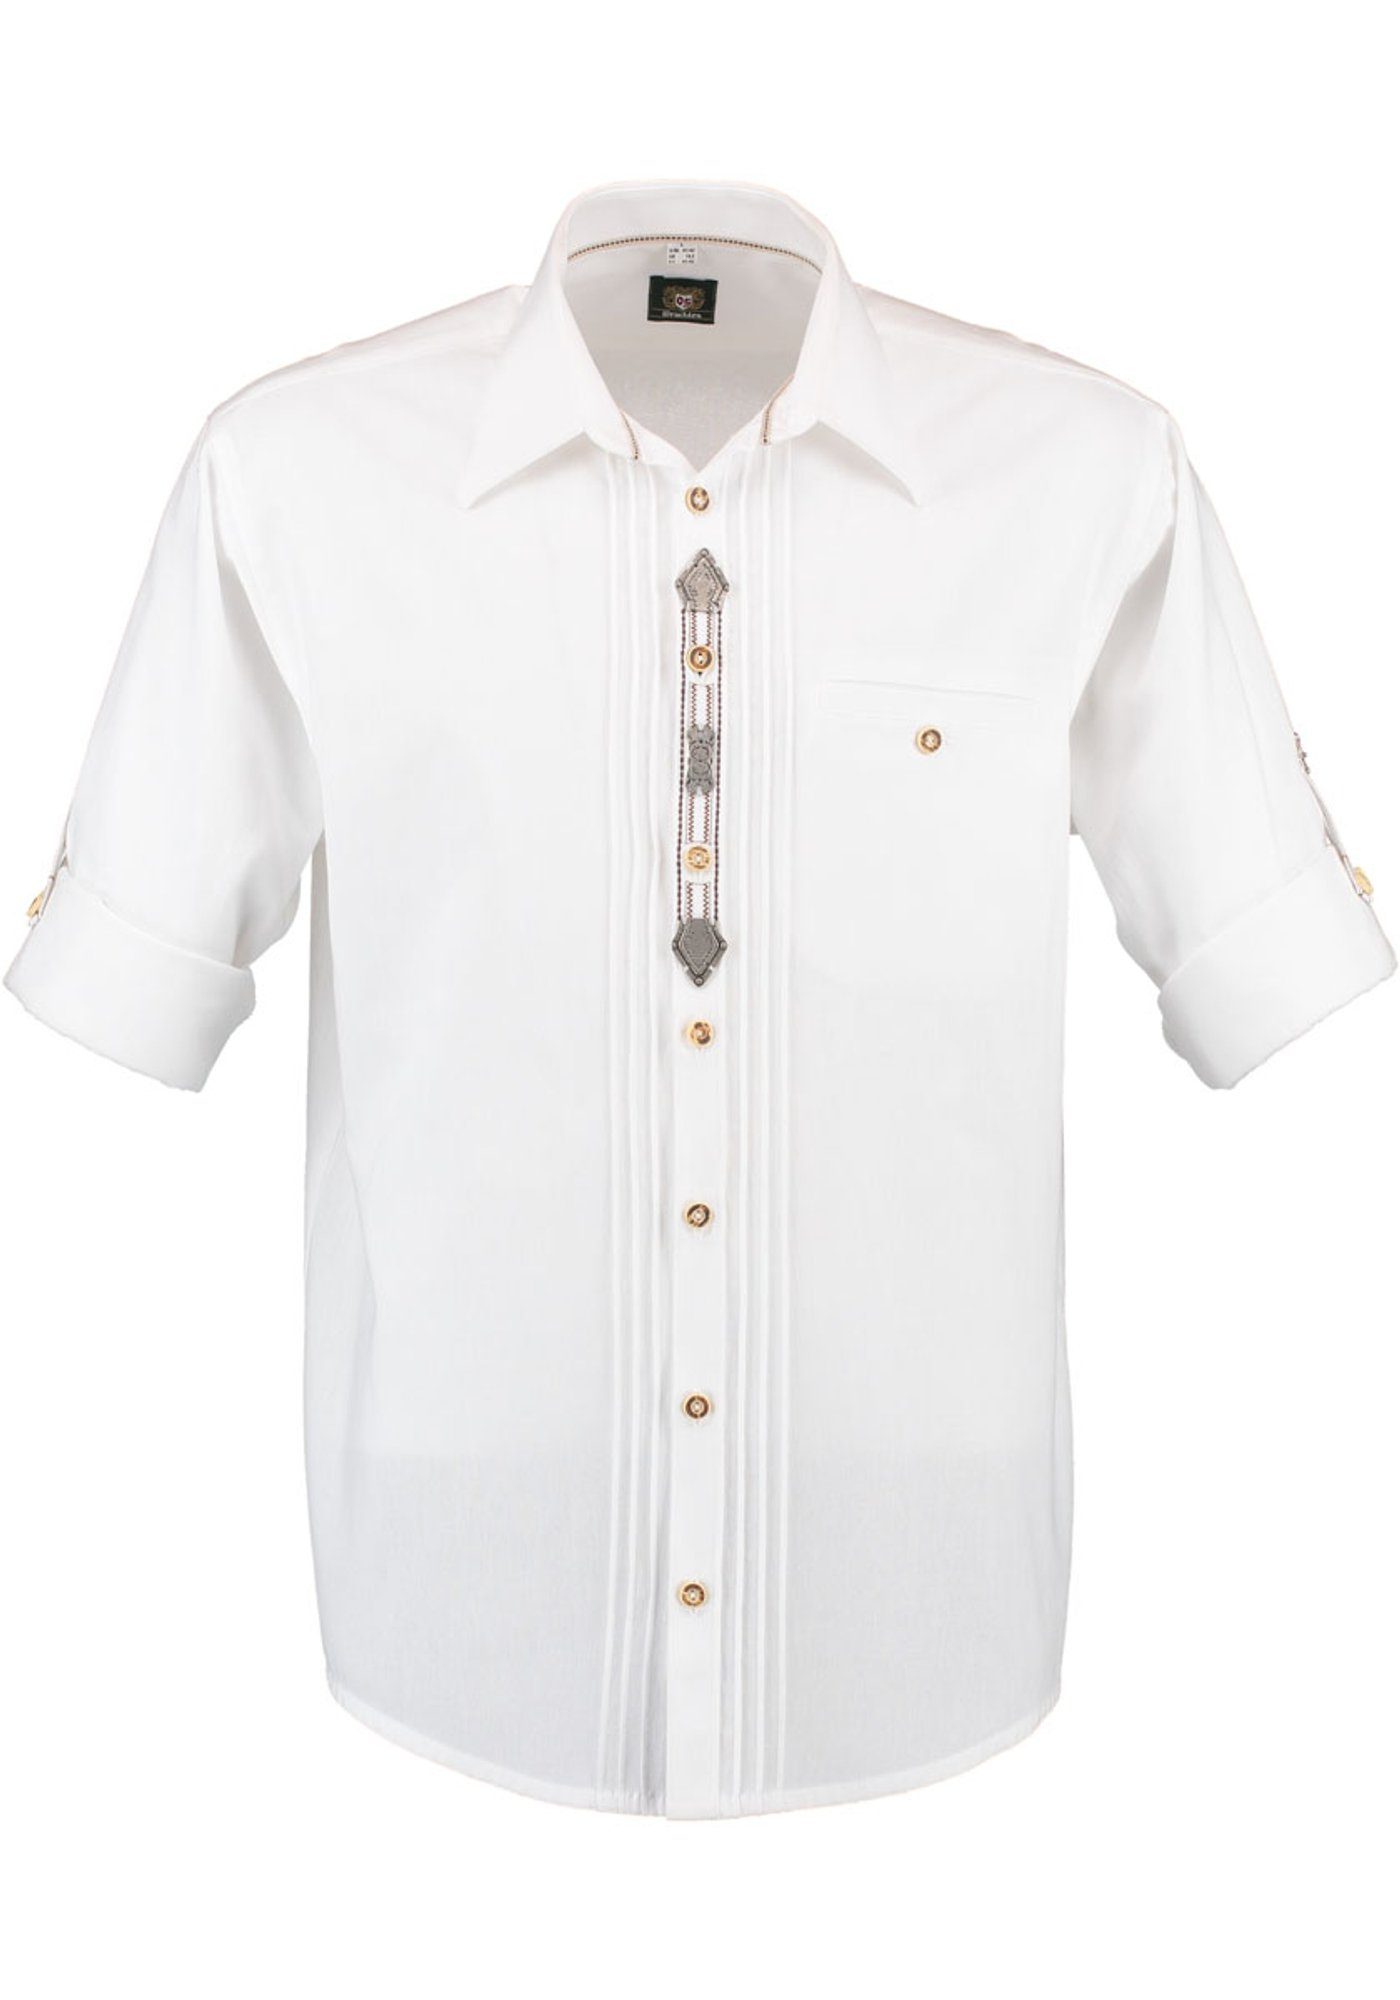 OS-Trachten Trachtenhemd Zierteile der auf 2x3 Knopfleiste weiß mit Afudi Biesen, Langarmhemd